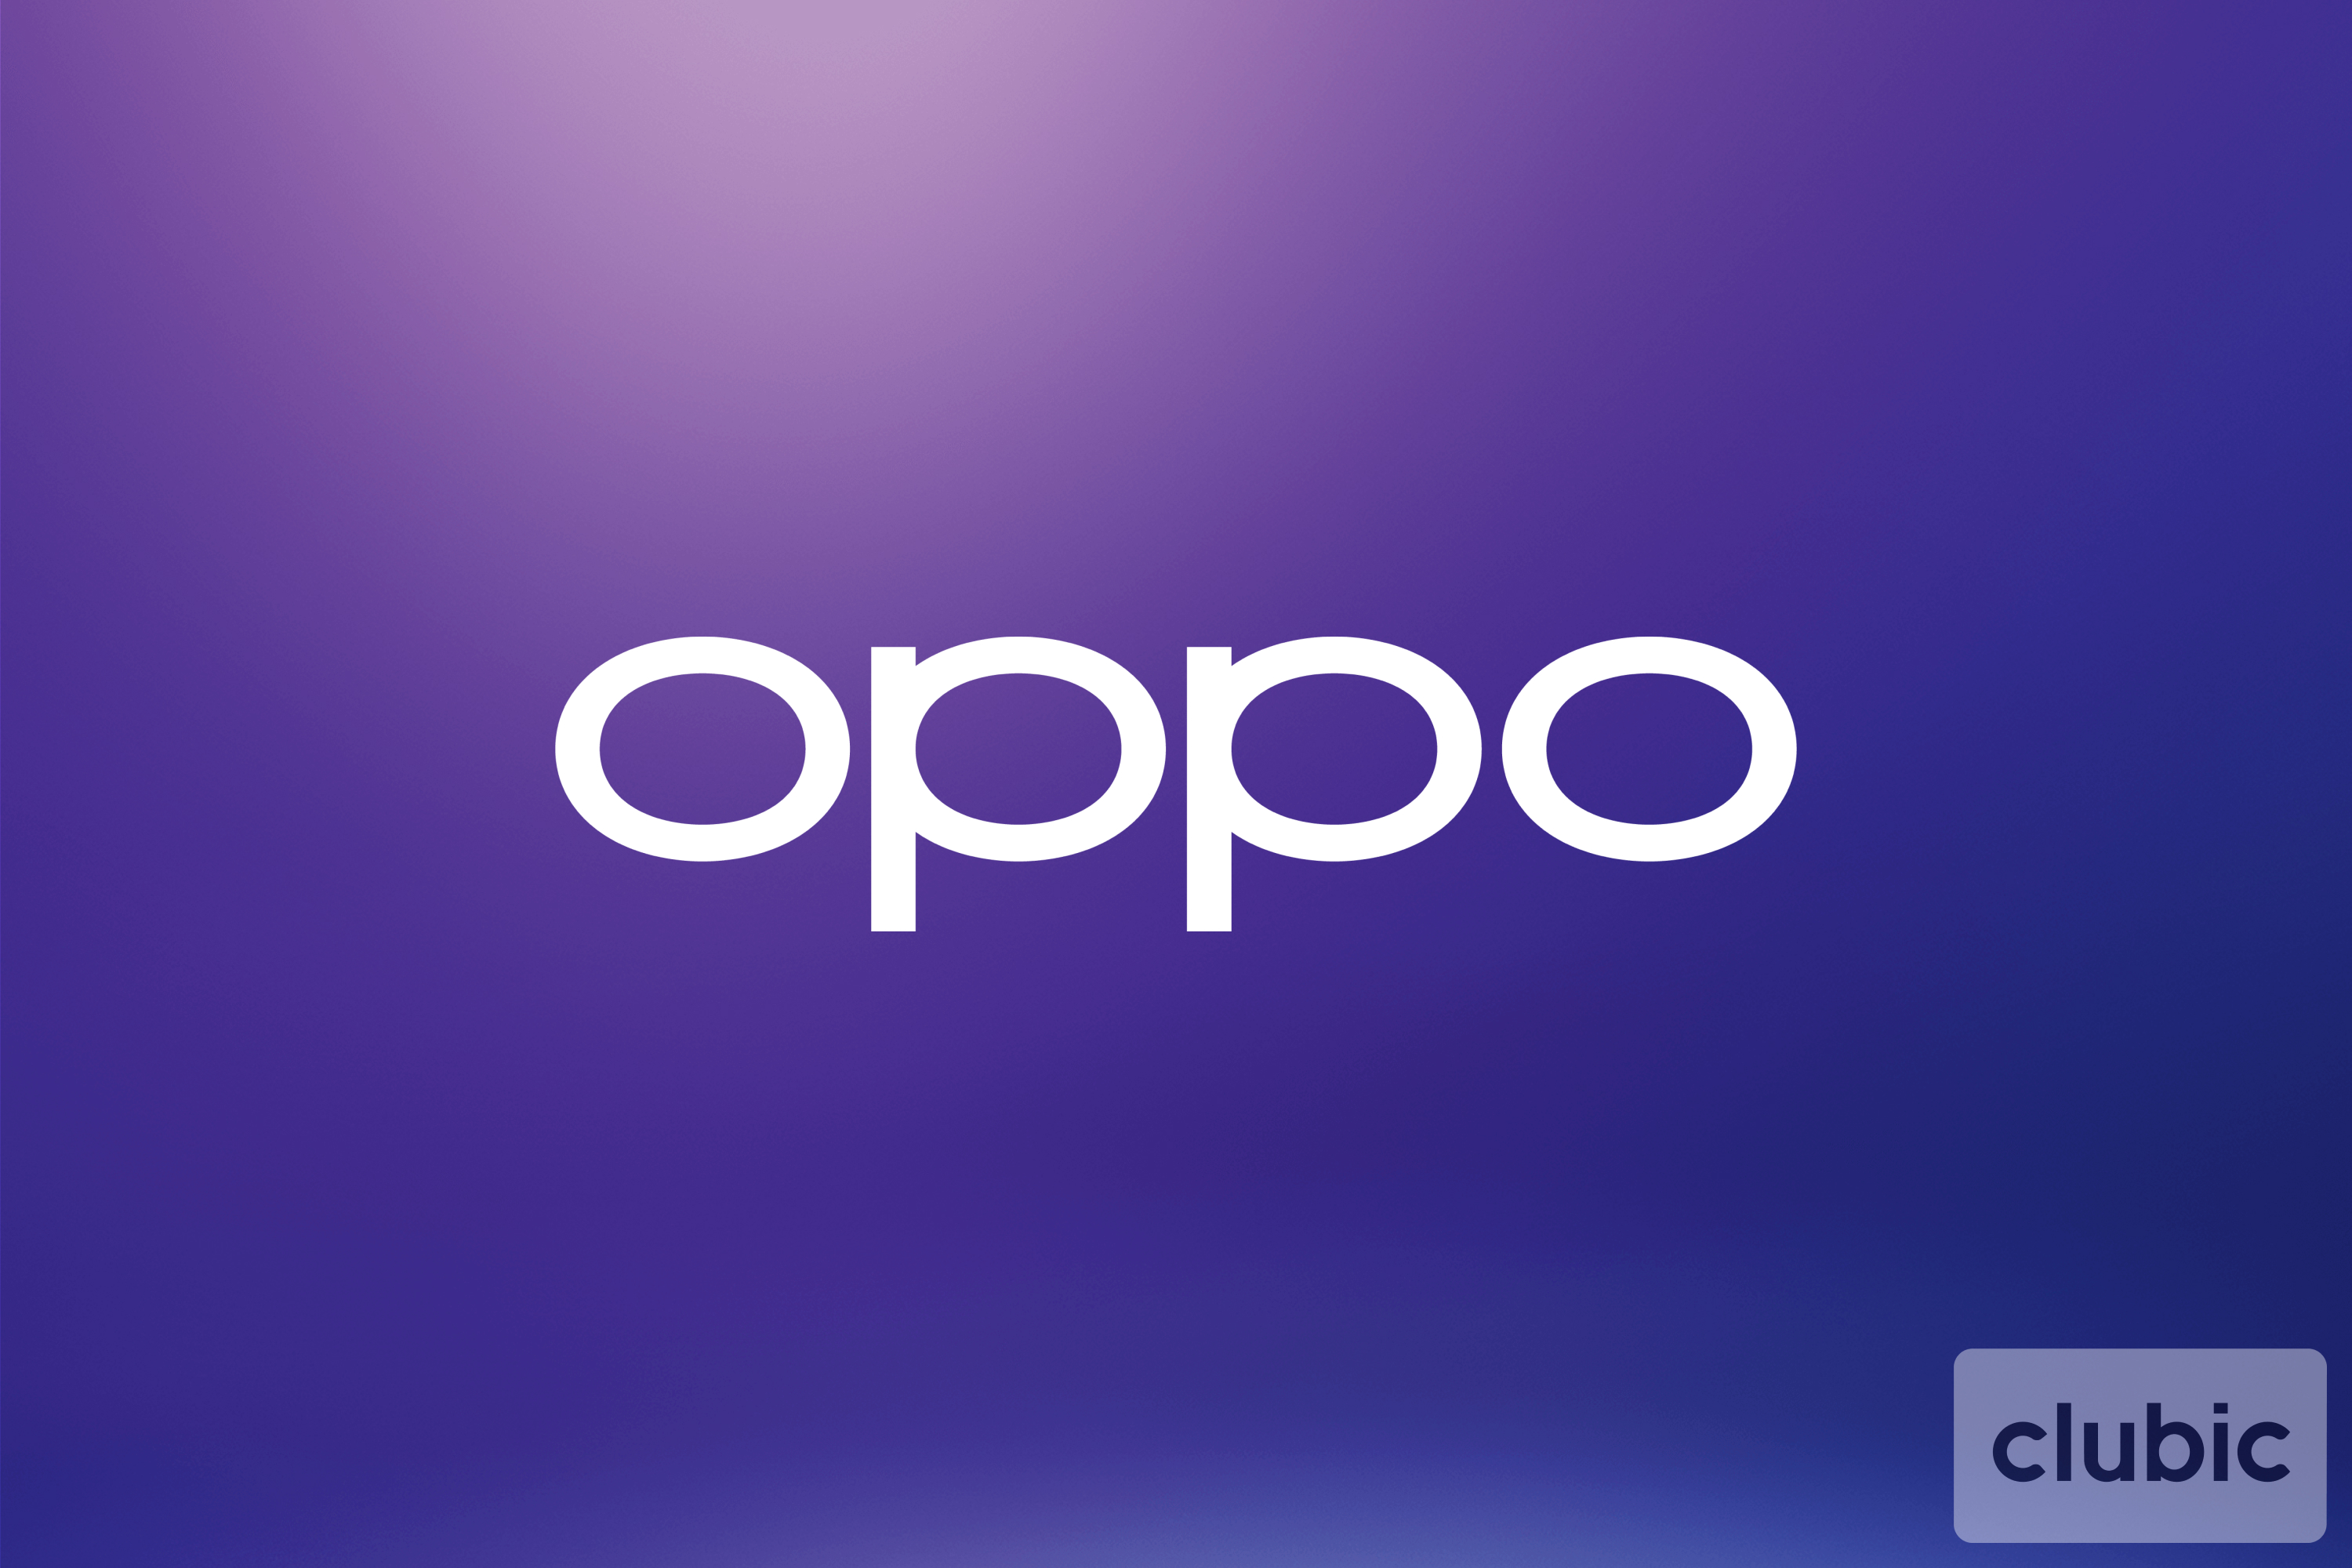 OPPO vend désormais plus de smartphones que Huawei en Chine